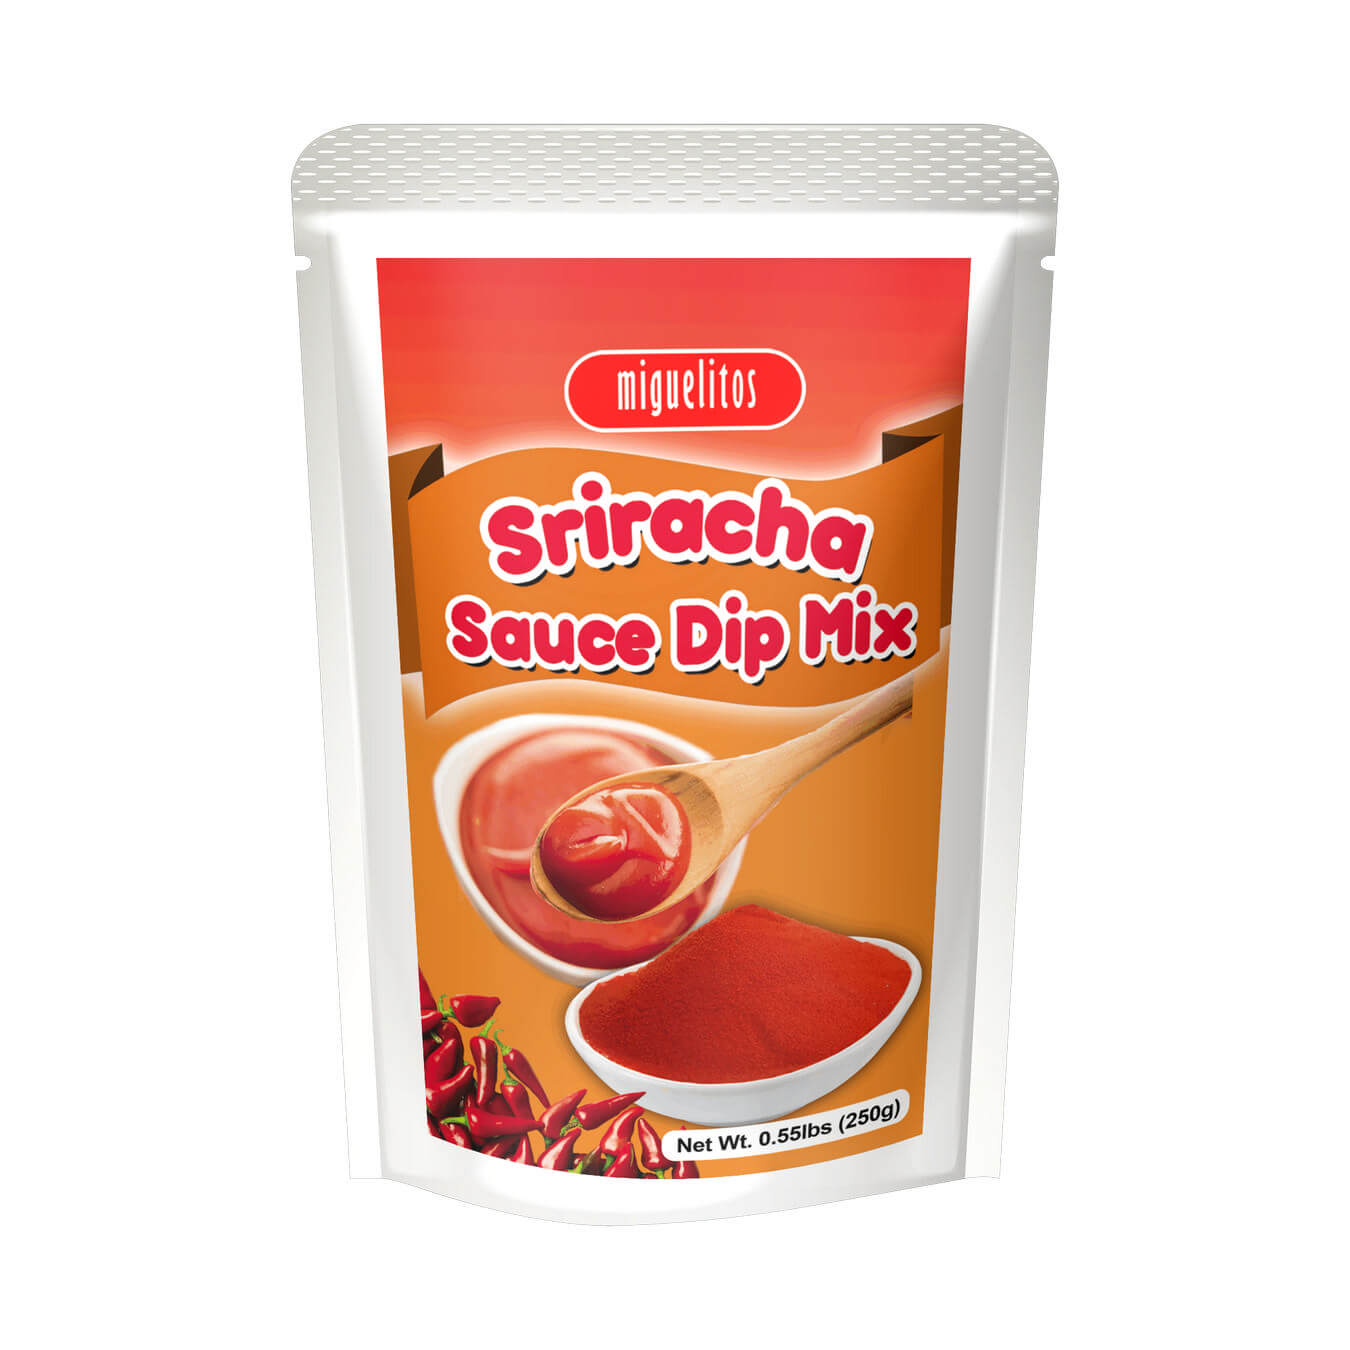 Sriracha Sauce Dip Mix